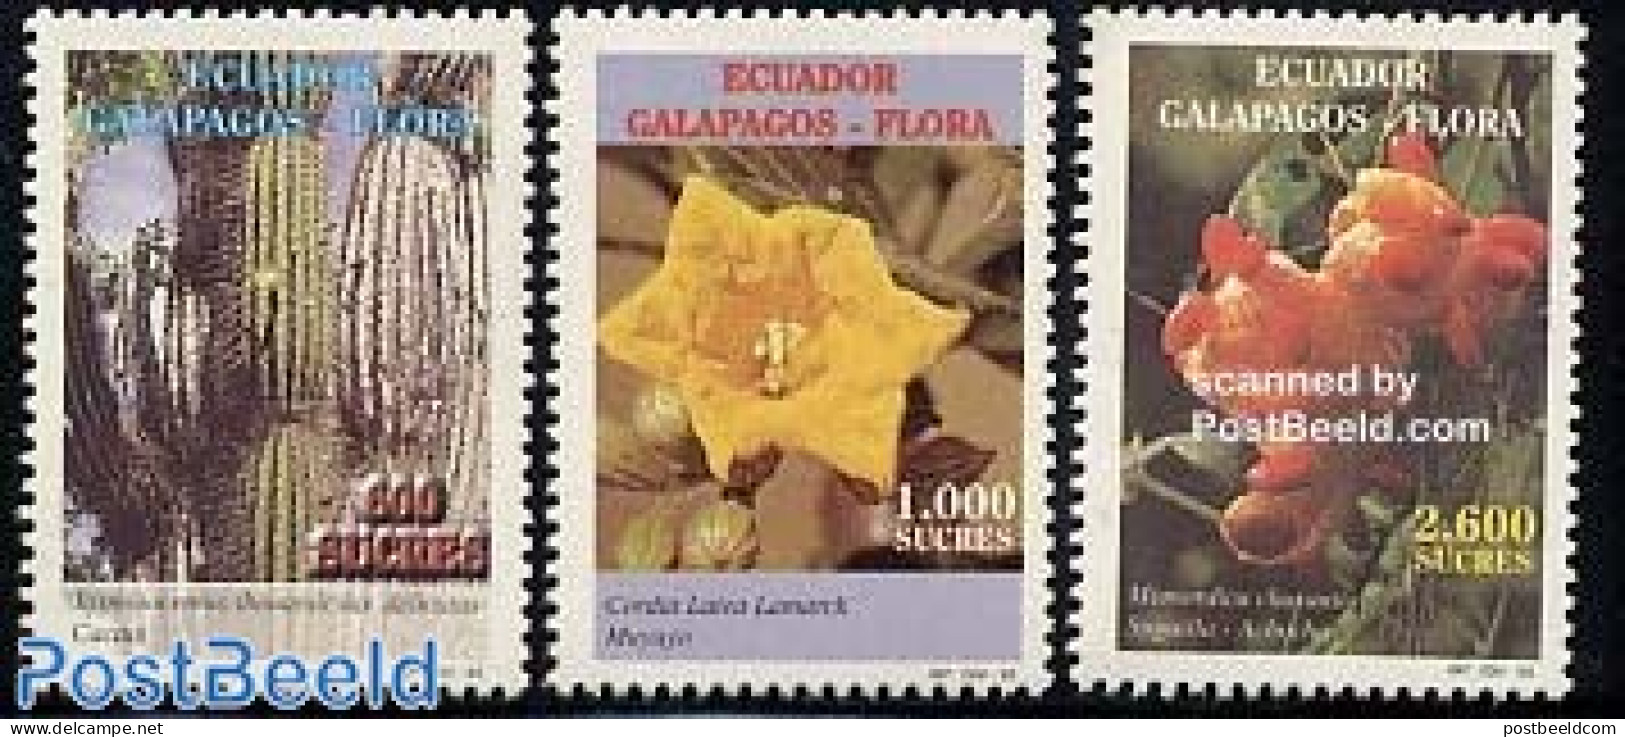 Ecuador 1998 Flowers 3v, Mint NH, Nature - Cacti - Flowers & Plants - Cactusses